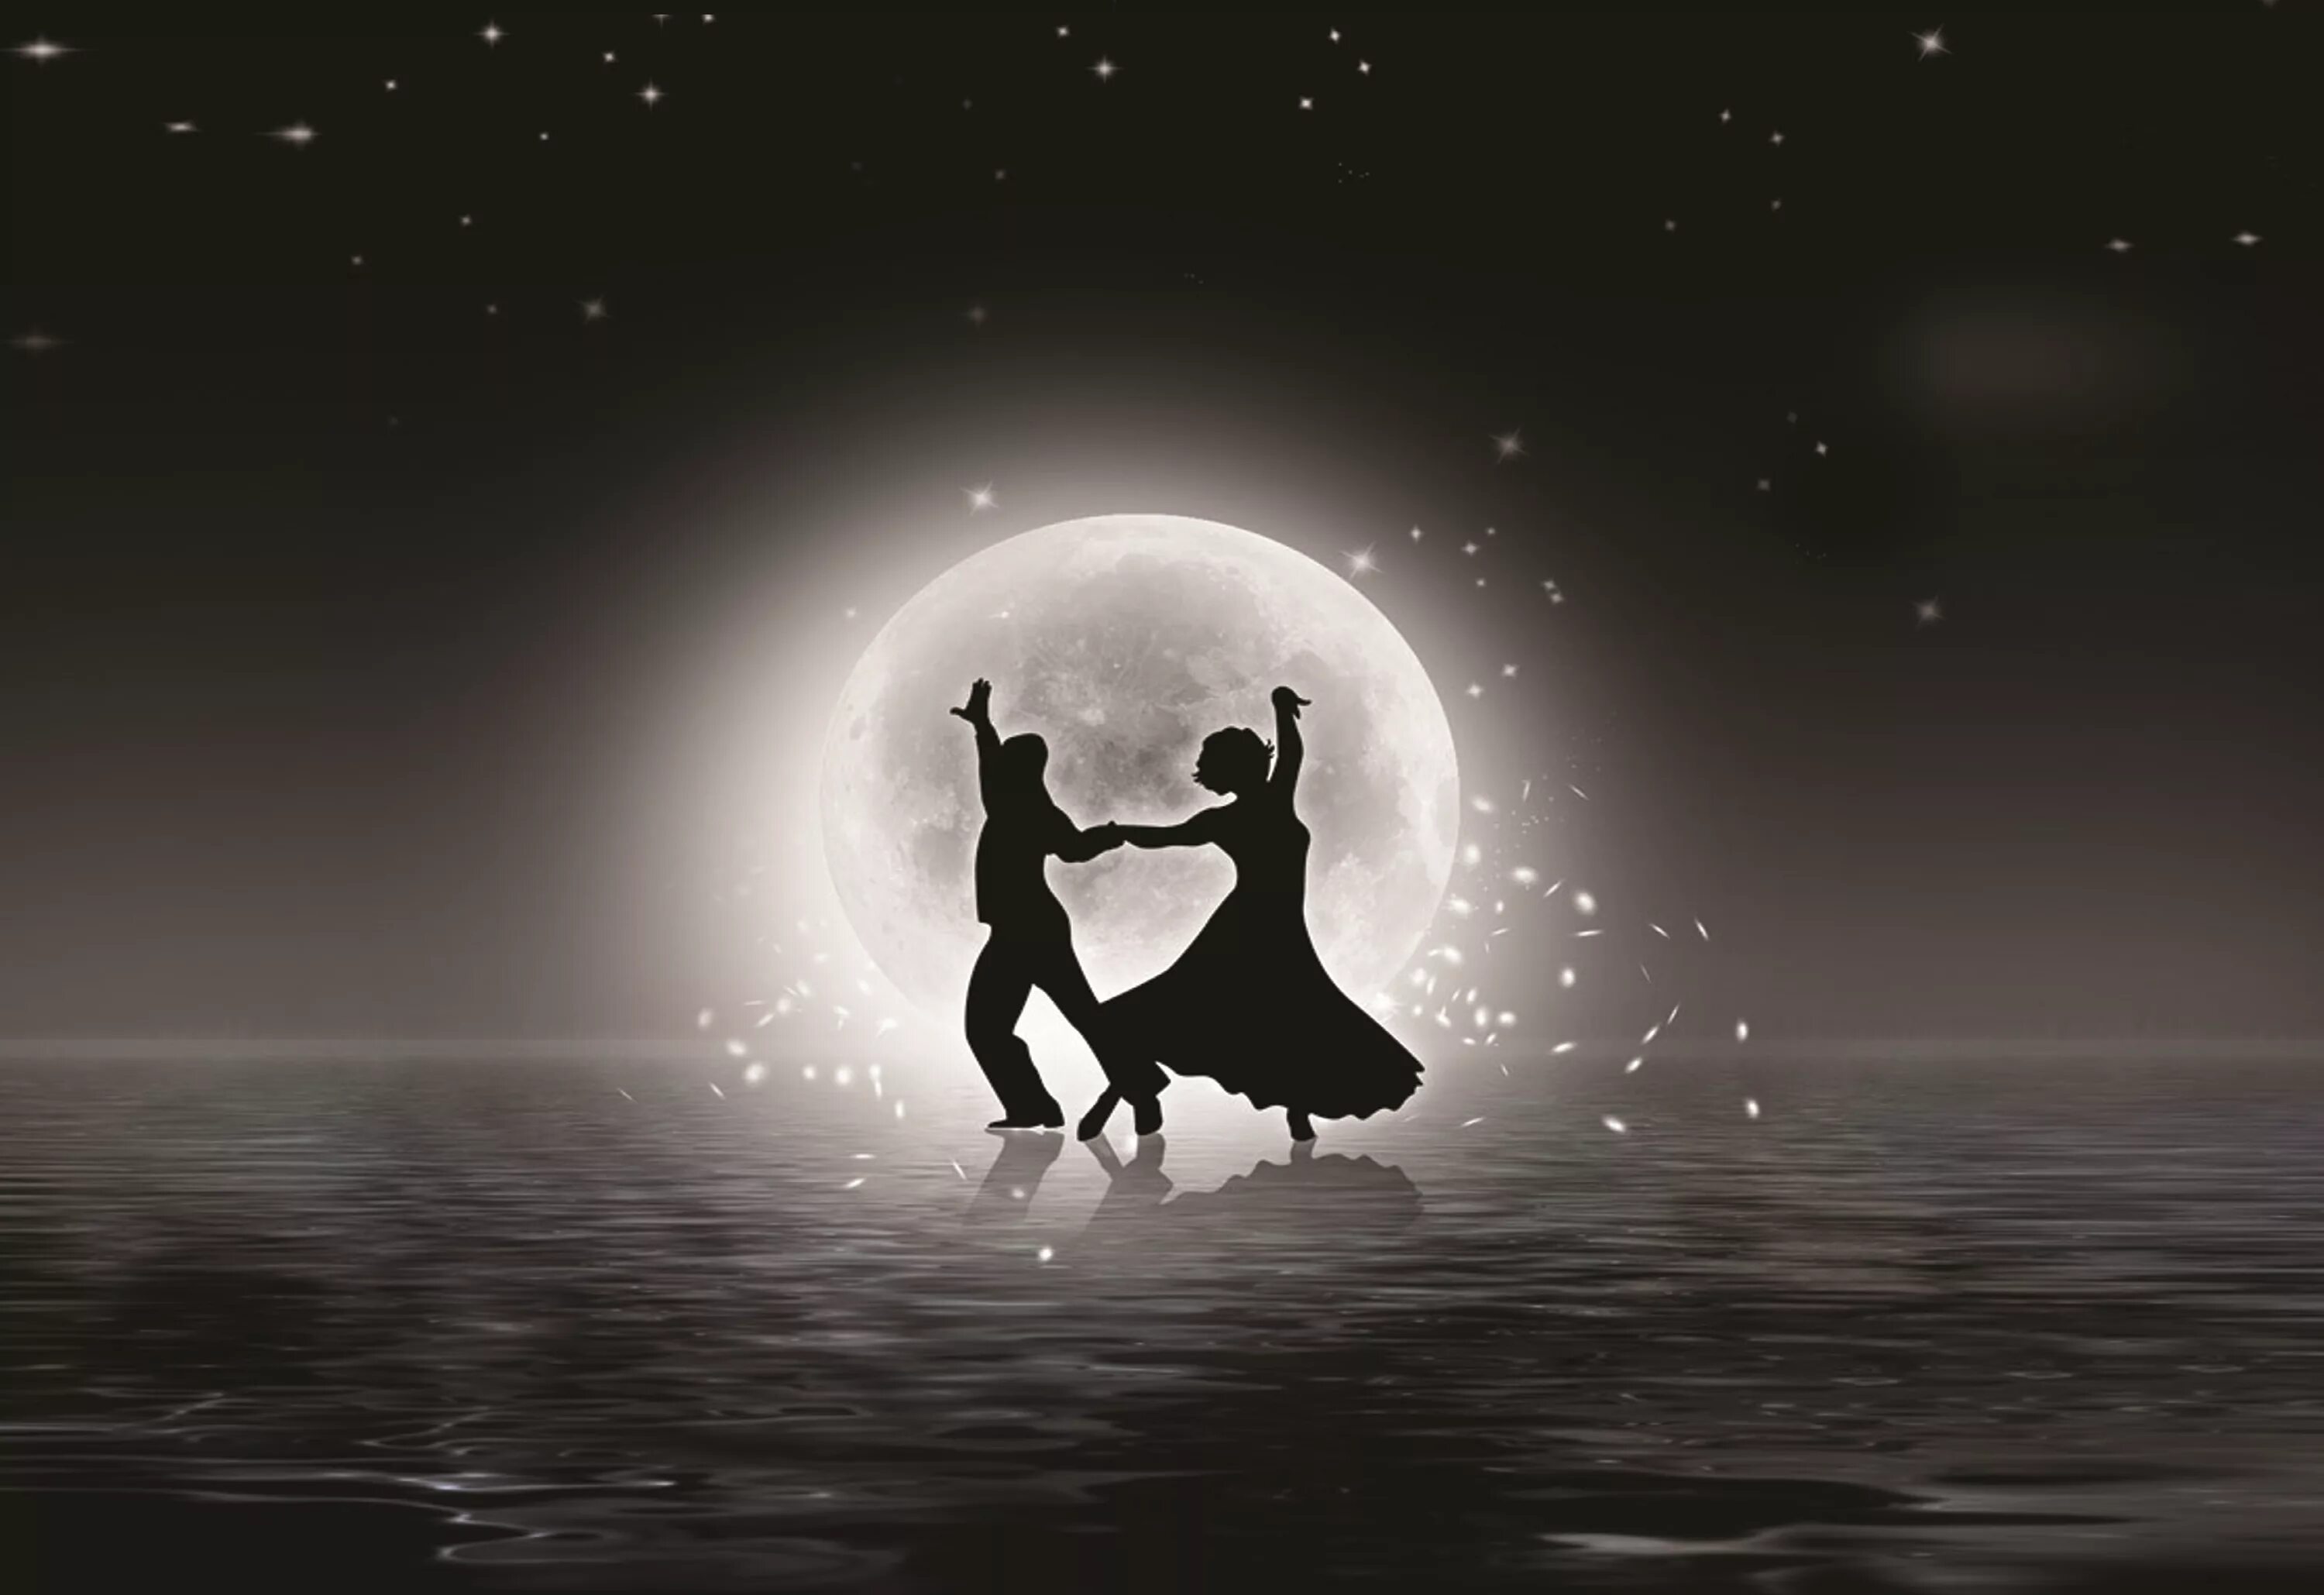 Песня танцуй под луной. Дансинг Мунлайт. Танцы под луной. Танцующая пара в темноте. Танцы для влюбленных.